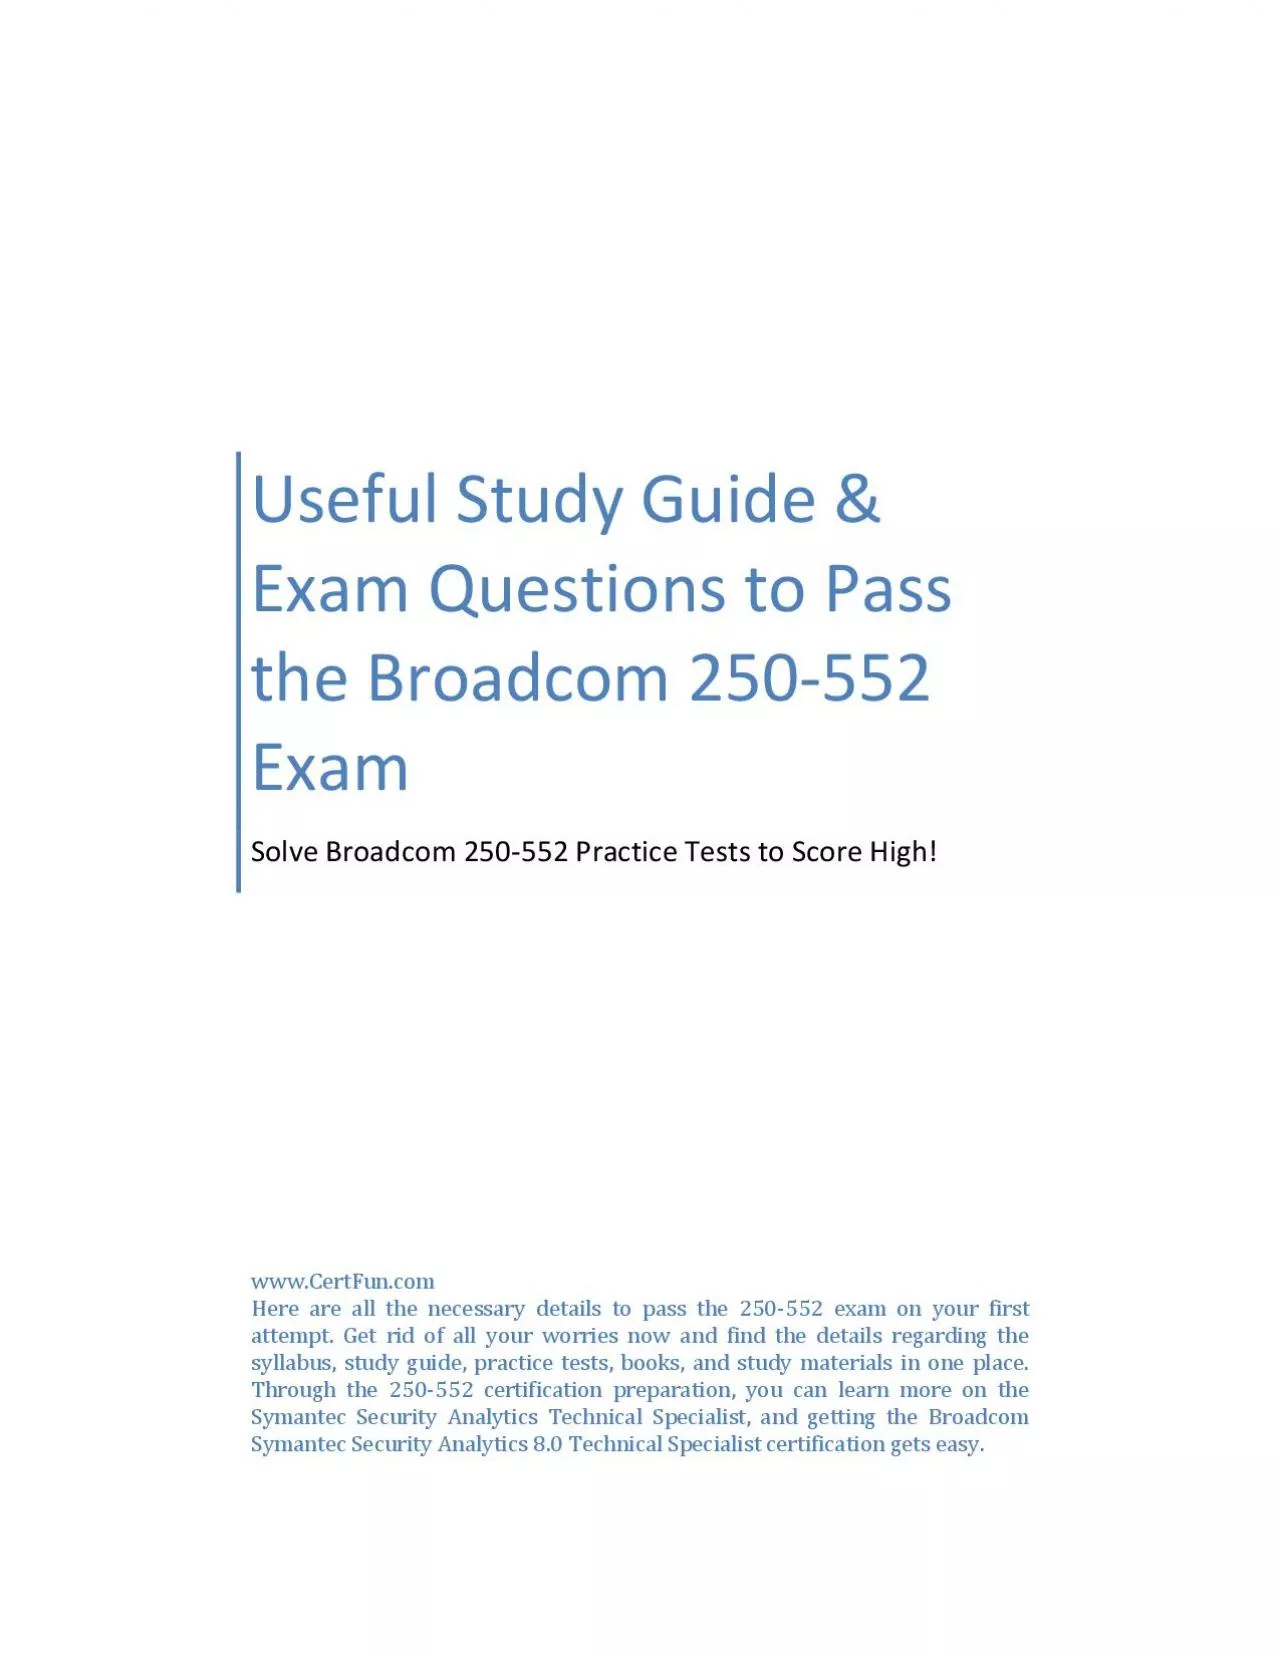 Useful Study Guide & Exam Questions to Pass the Broadcom 250-552 Exam